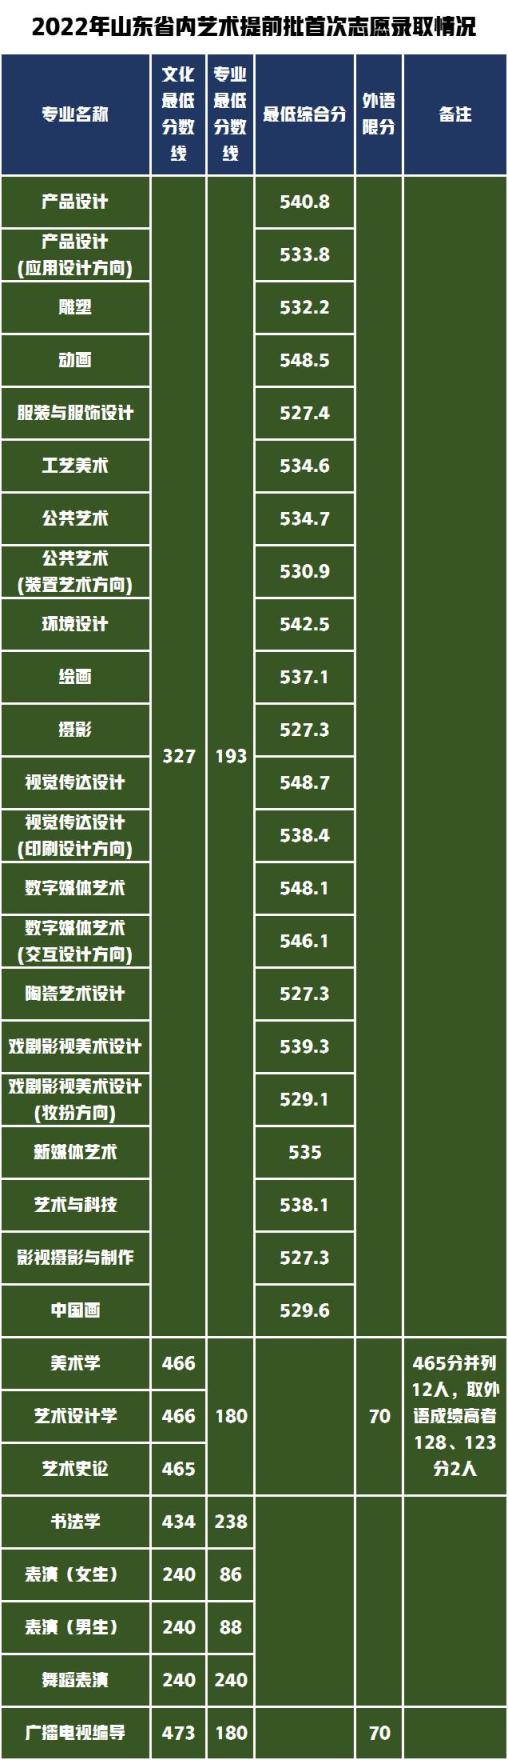 江苏省高考艺术类分数线2022(山东工艺美术学院2020年艺术类分数线)(图7)